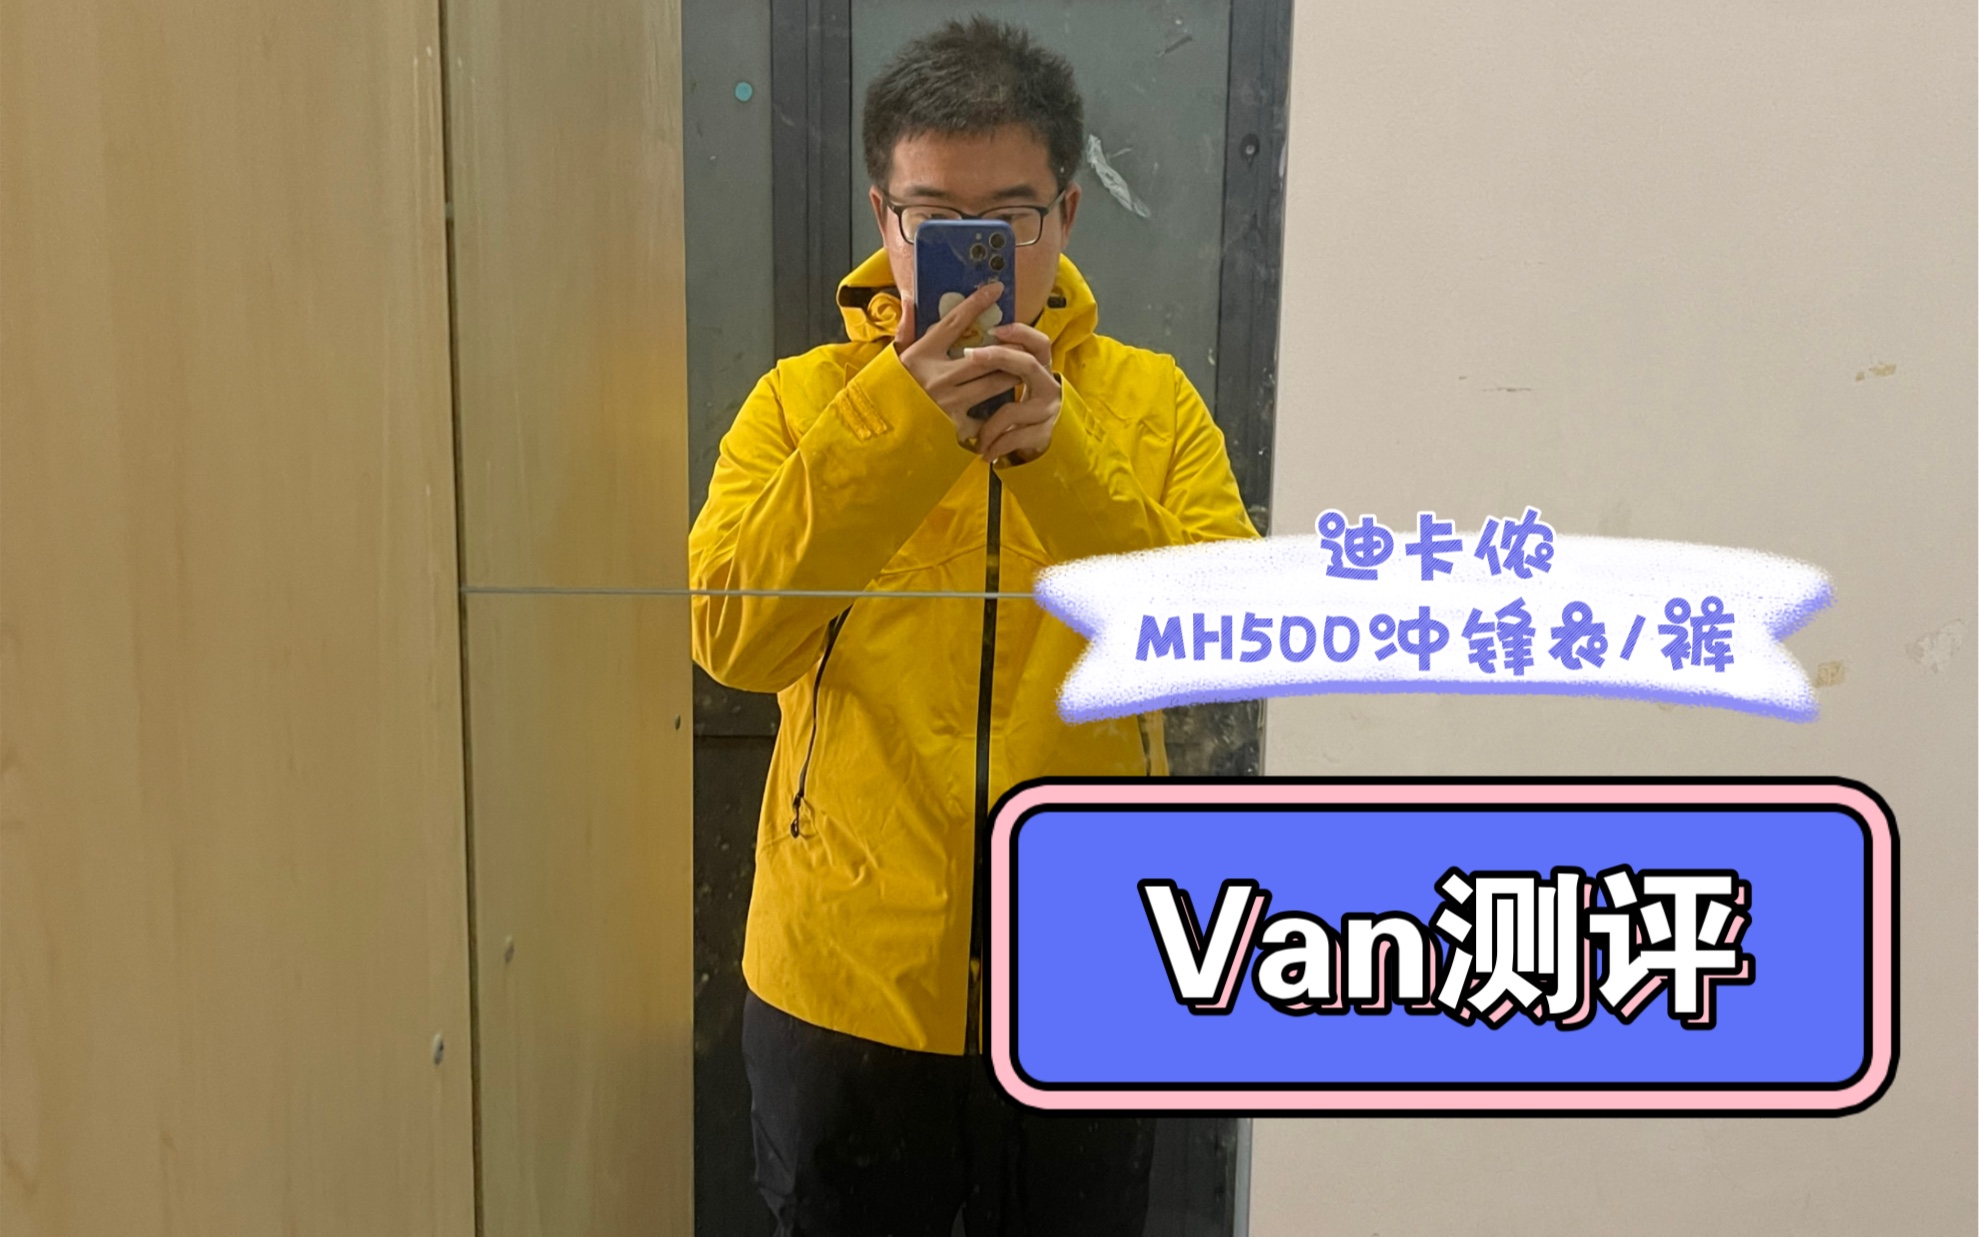 【Van测评】（特辑）迪卡侬MH500冲锋衣/裤沉浸式体验